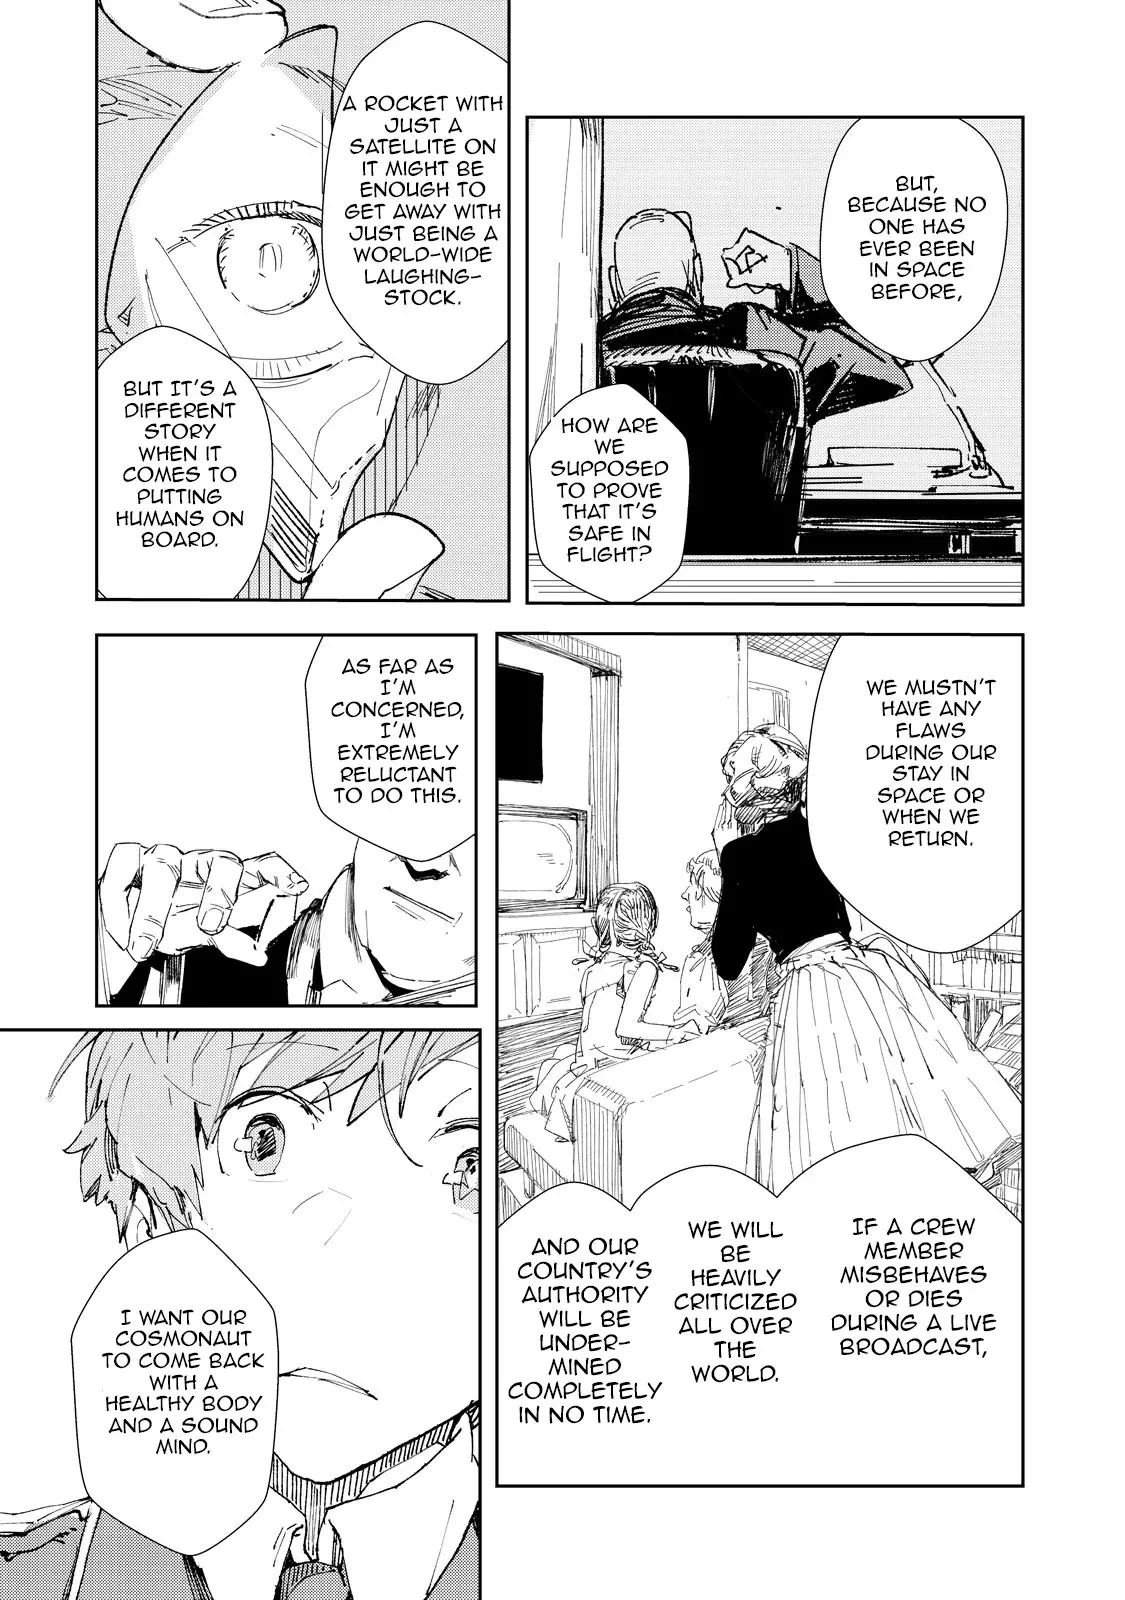 Tsuki to Laika to Nosferatu Vol. 6 (Light Novel)